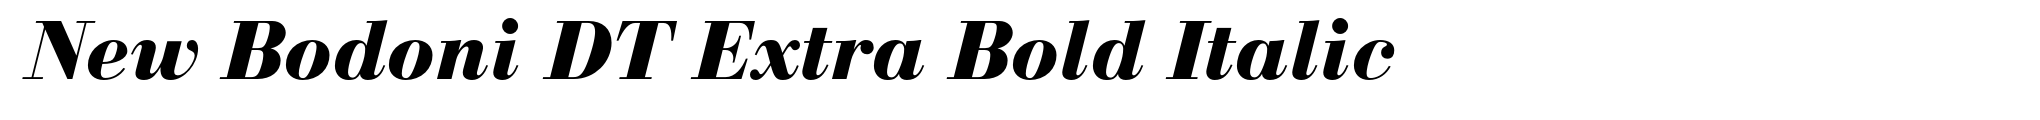 New Bodoni DT Extra Bold Italic image